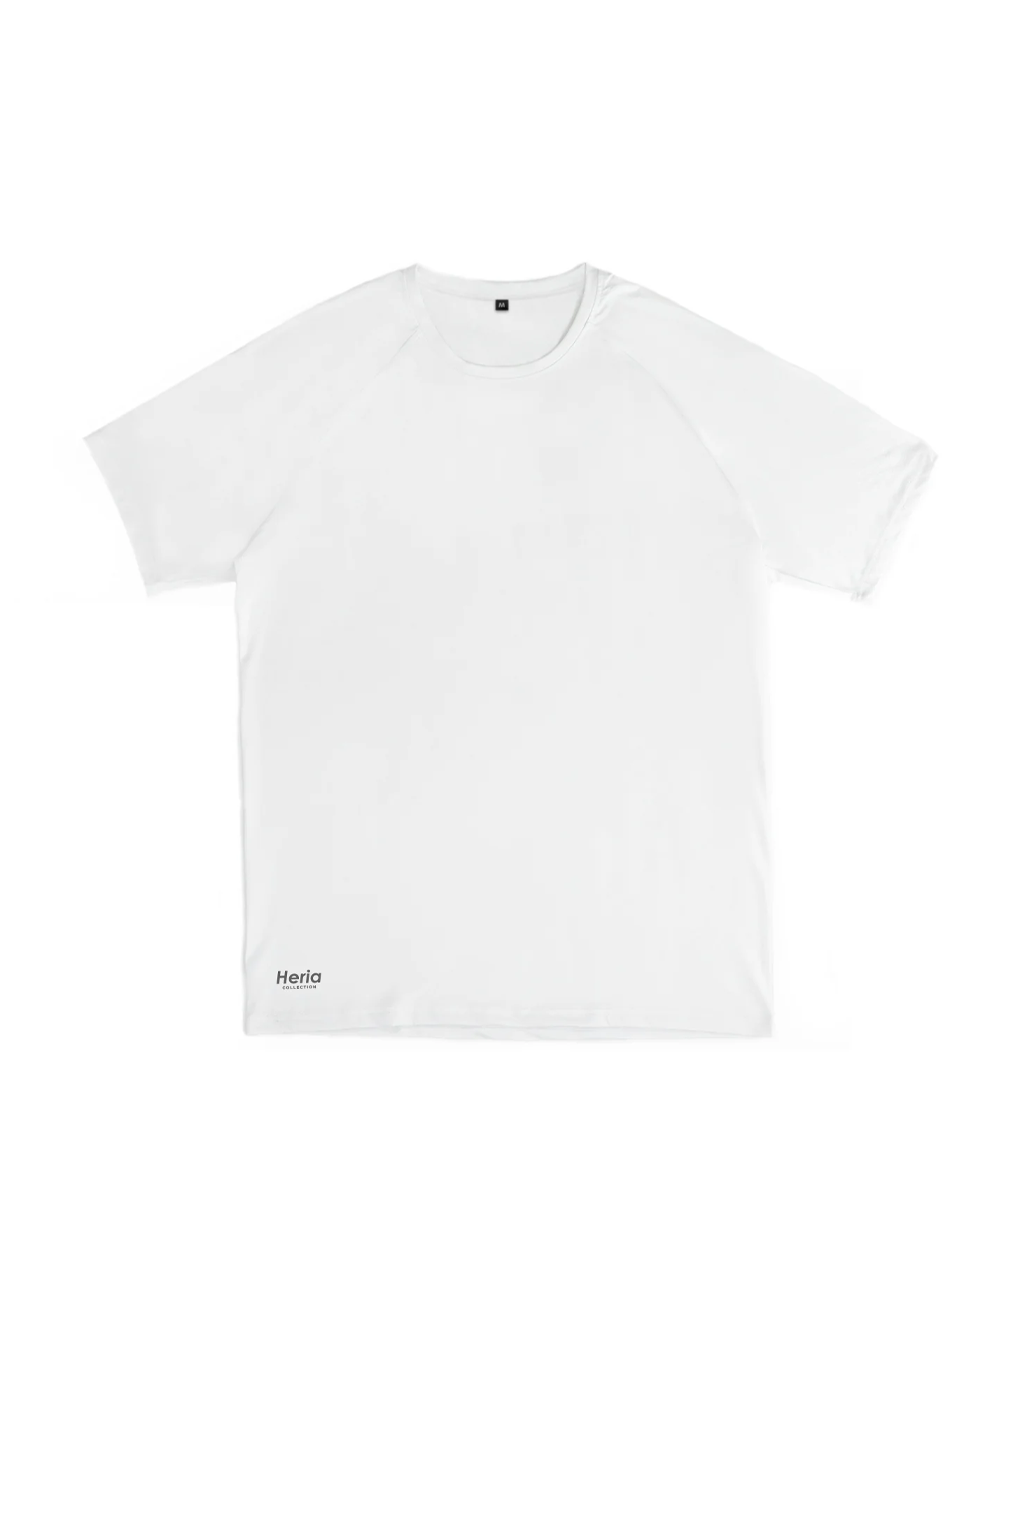 Heria Training T-Shirt - White